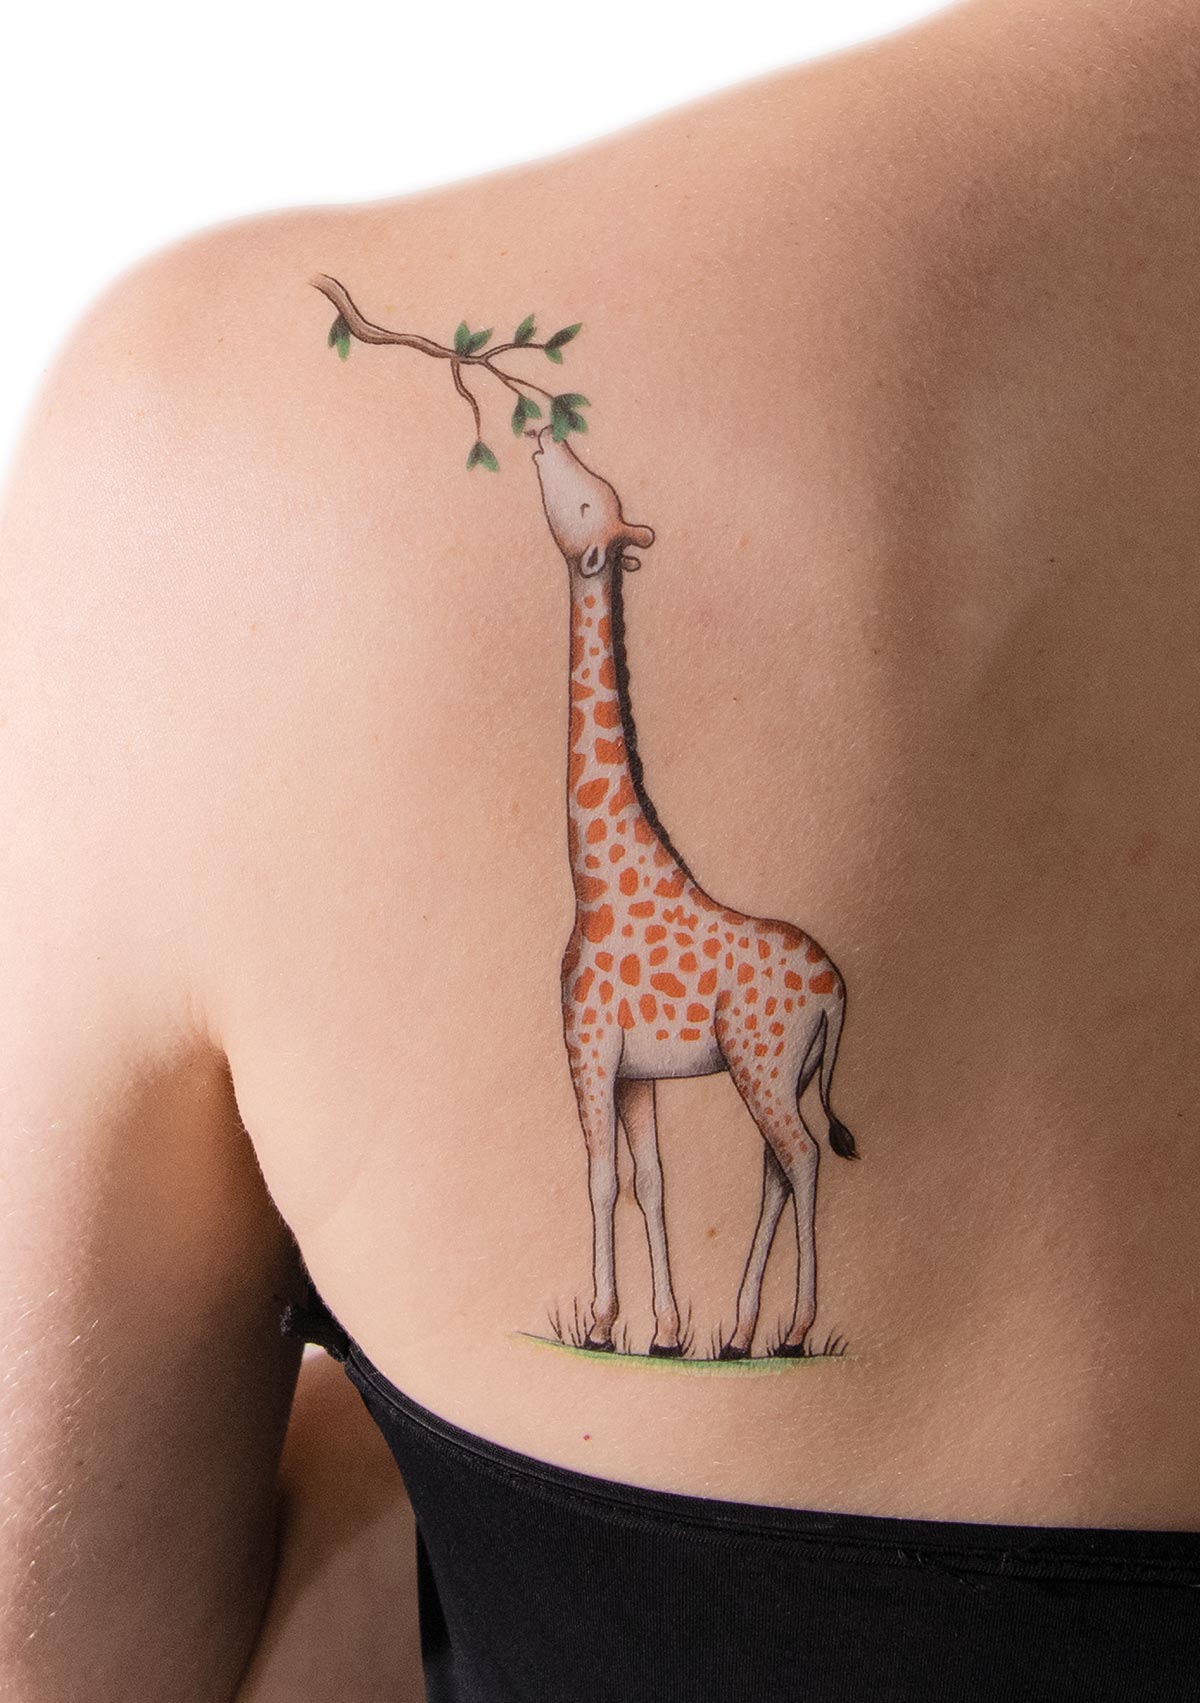 Minimal Tattoos in 2023  Giraffe tattoos Geometric giraffe tattoo Small giraffe  tattoo